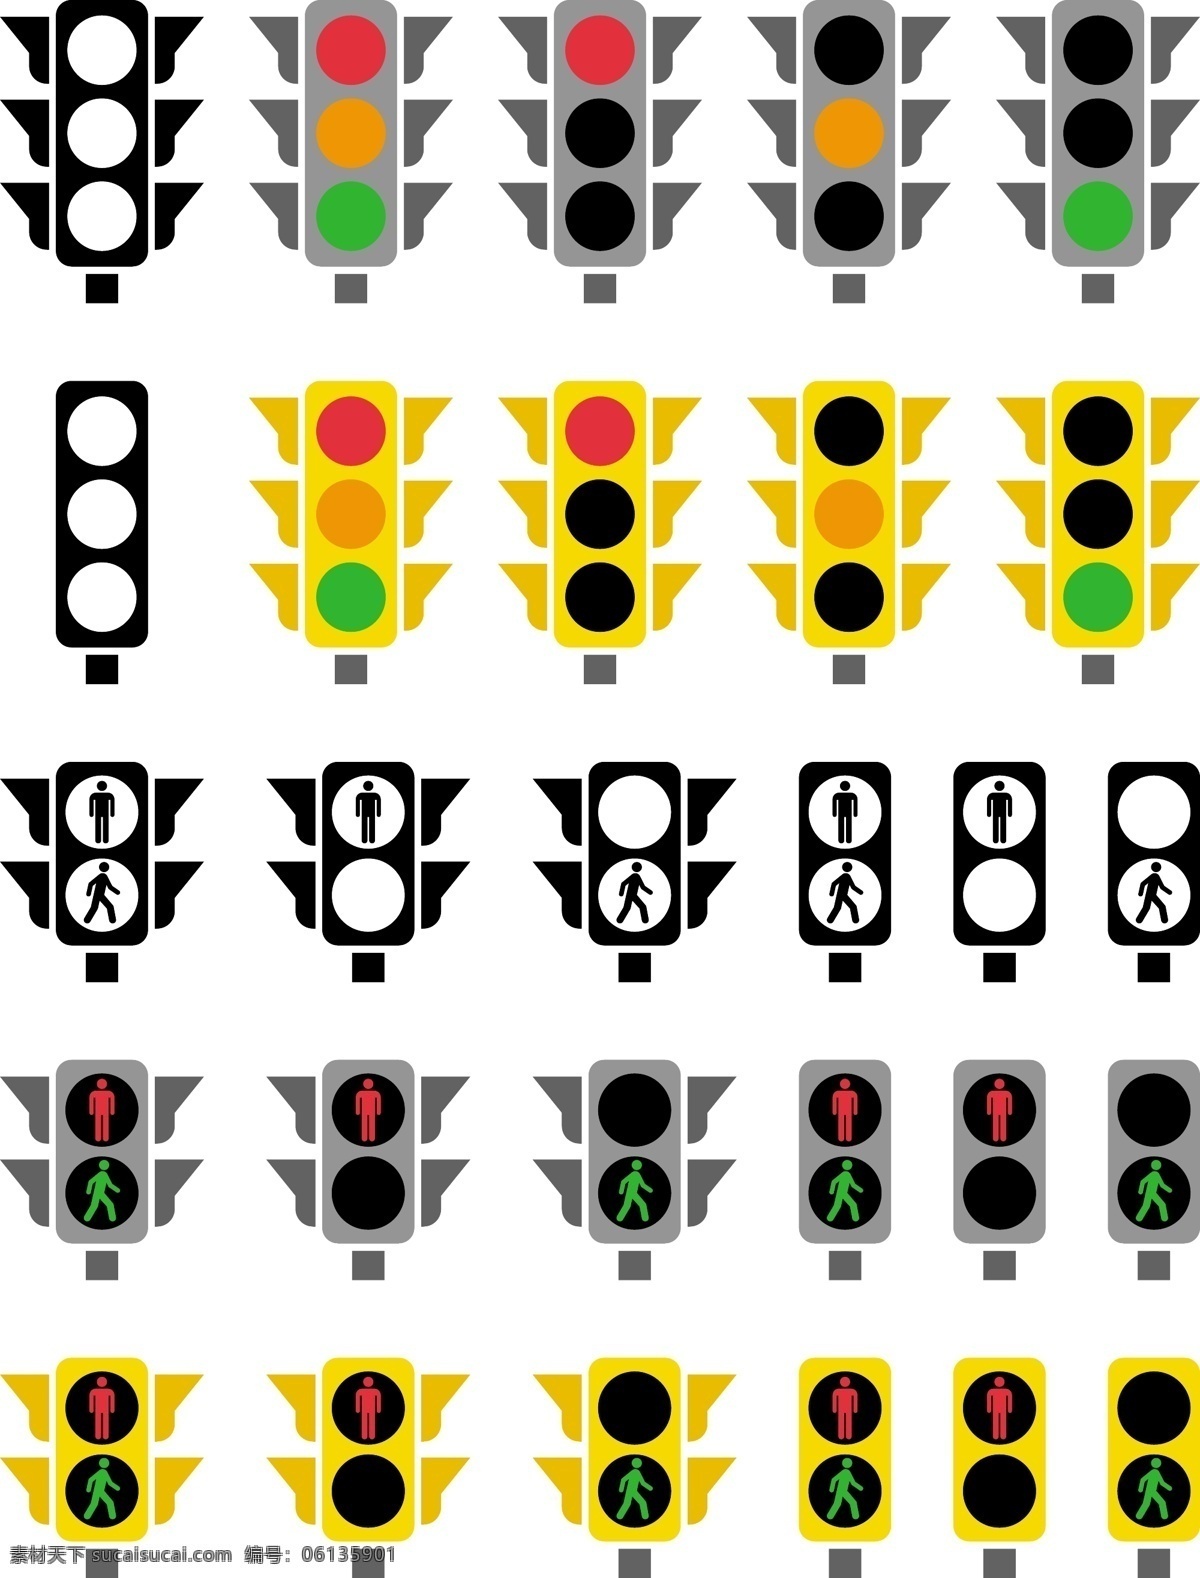 红绿灯 图标 矢量 模板下载 红绿灯图标 红灯 绿灯 黄灯 马路灯 交通灯 生活百科 矢量素材 白色